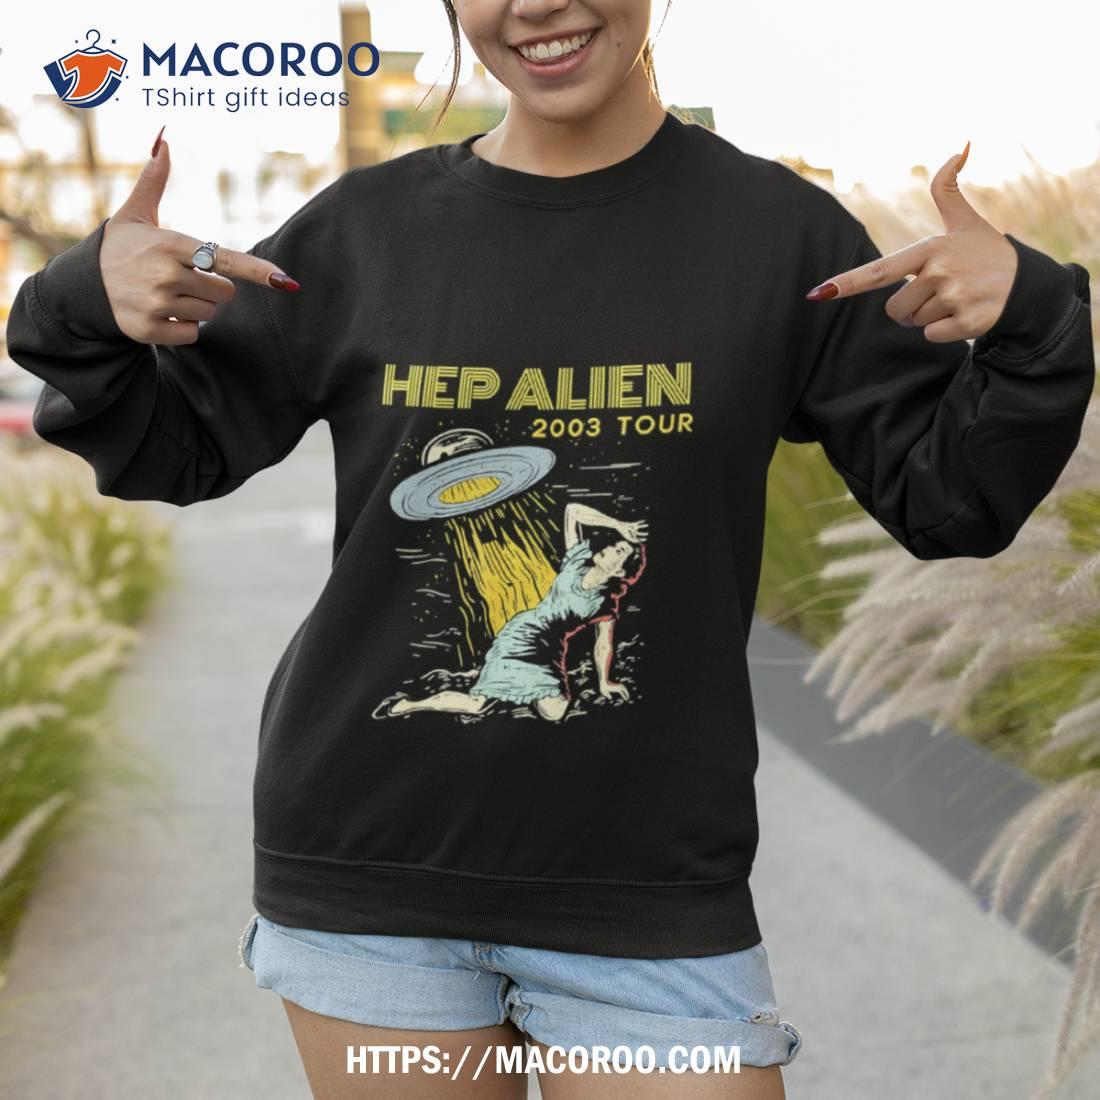 Hep Alien Band Pop Culture Shirt Sweatshirt